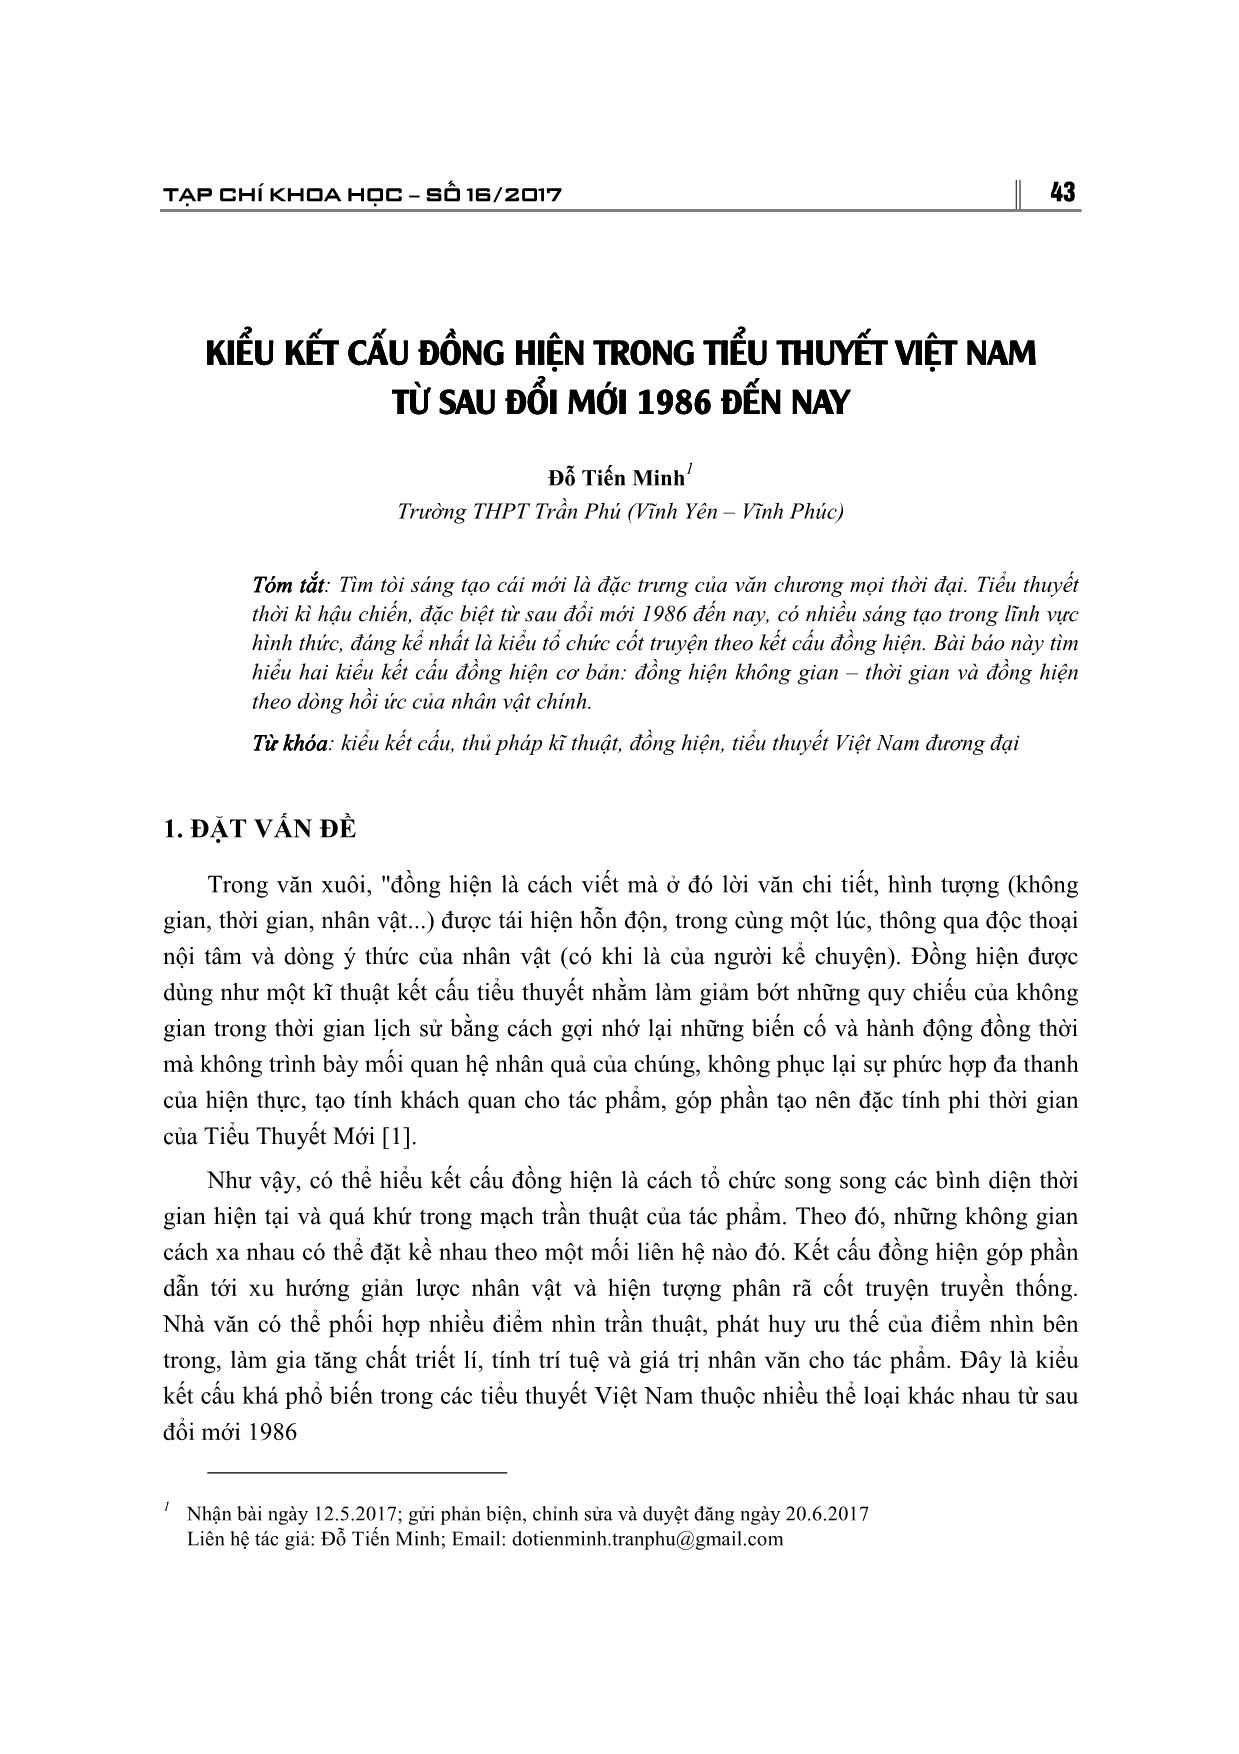 Kiểu kết cấu đồng hiện trong tiểu thuyết Việt Nam từ sau đổi mới 1986 đến nay trang 1